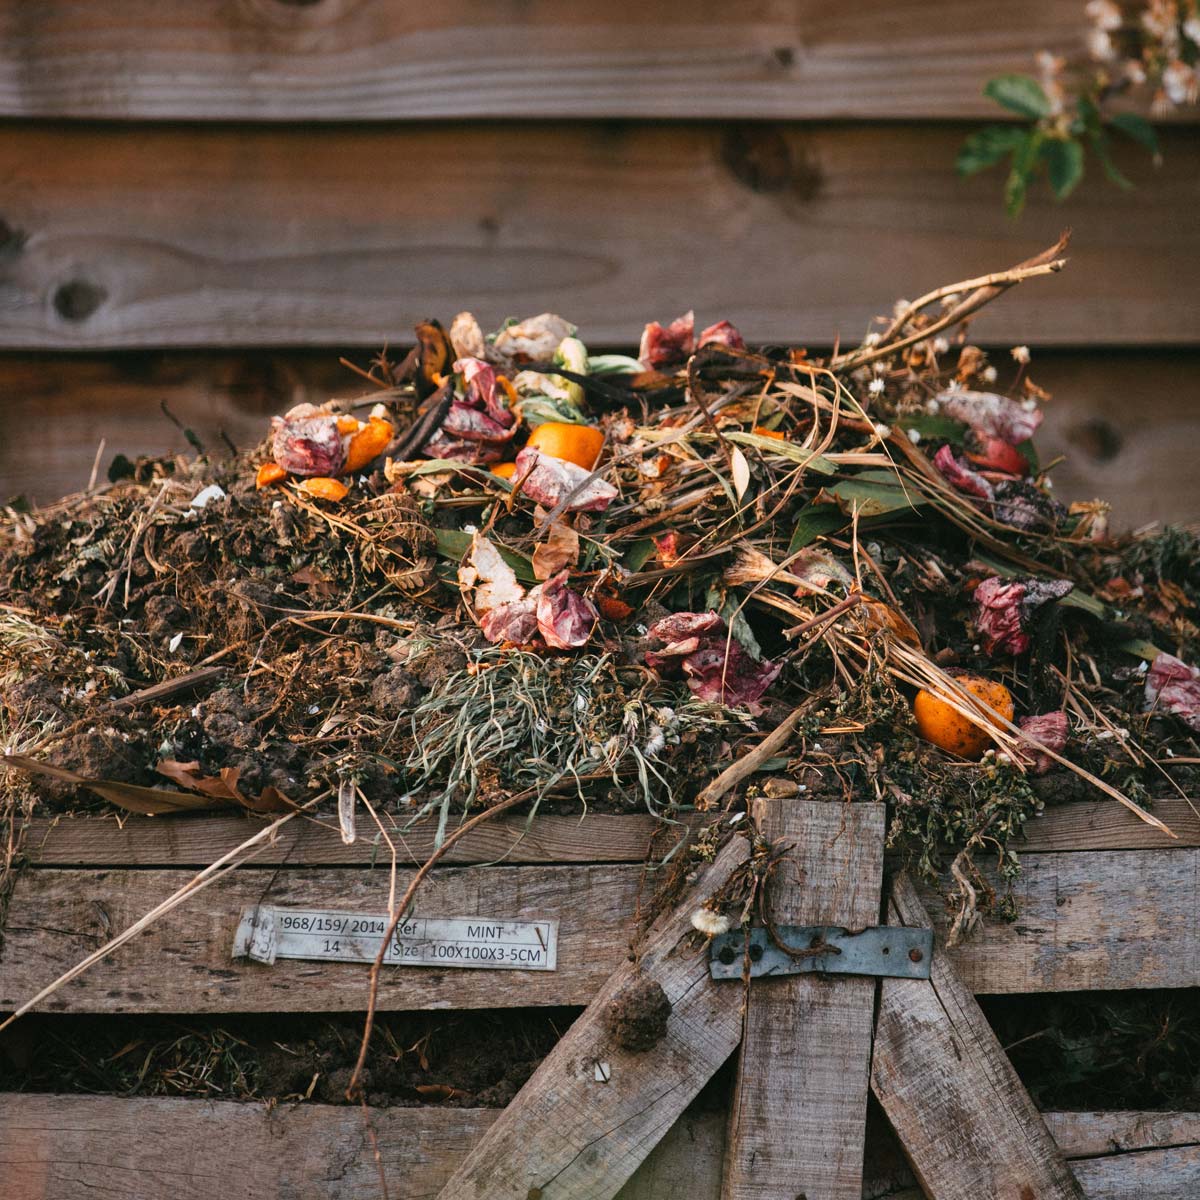 A Garden Compost Pile